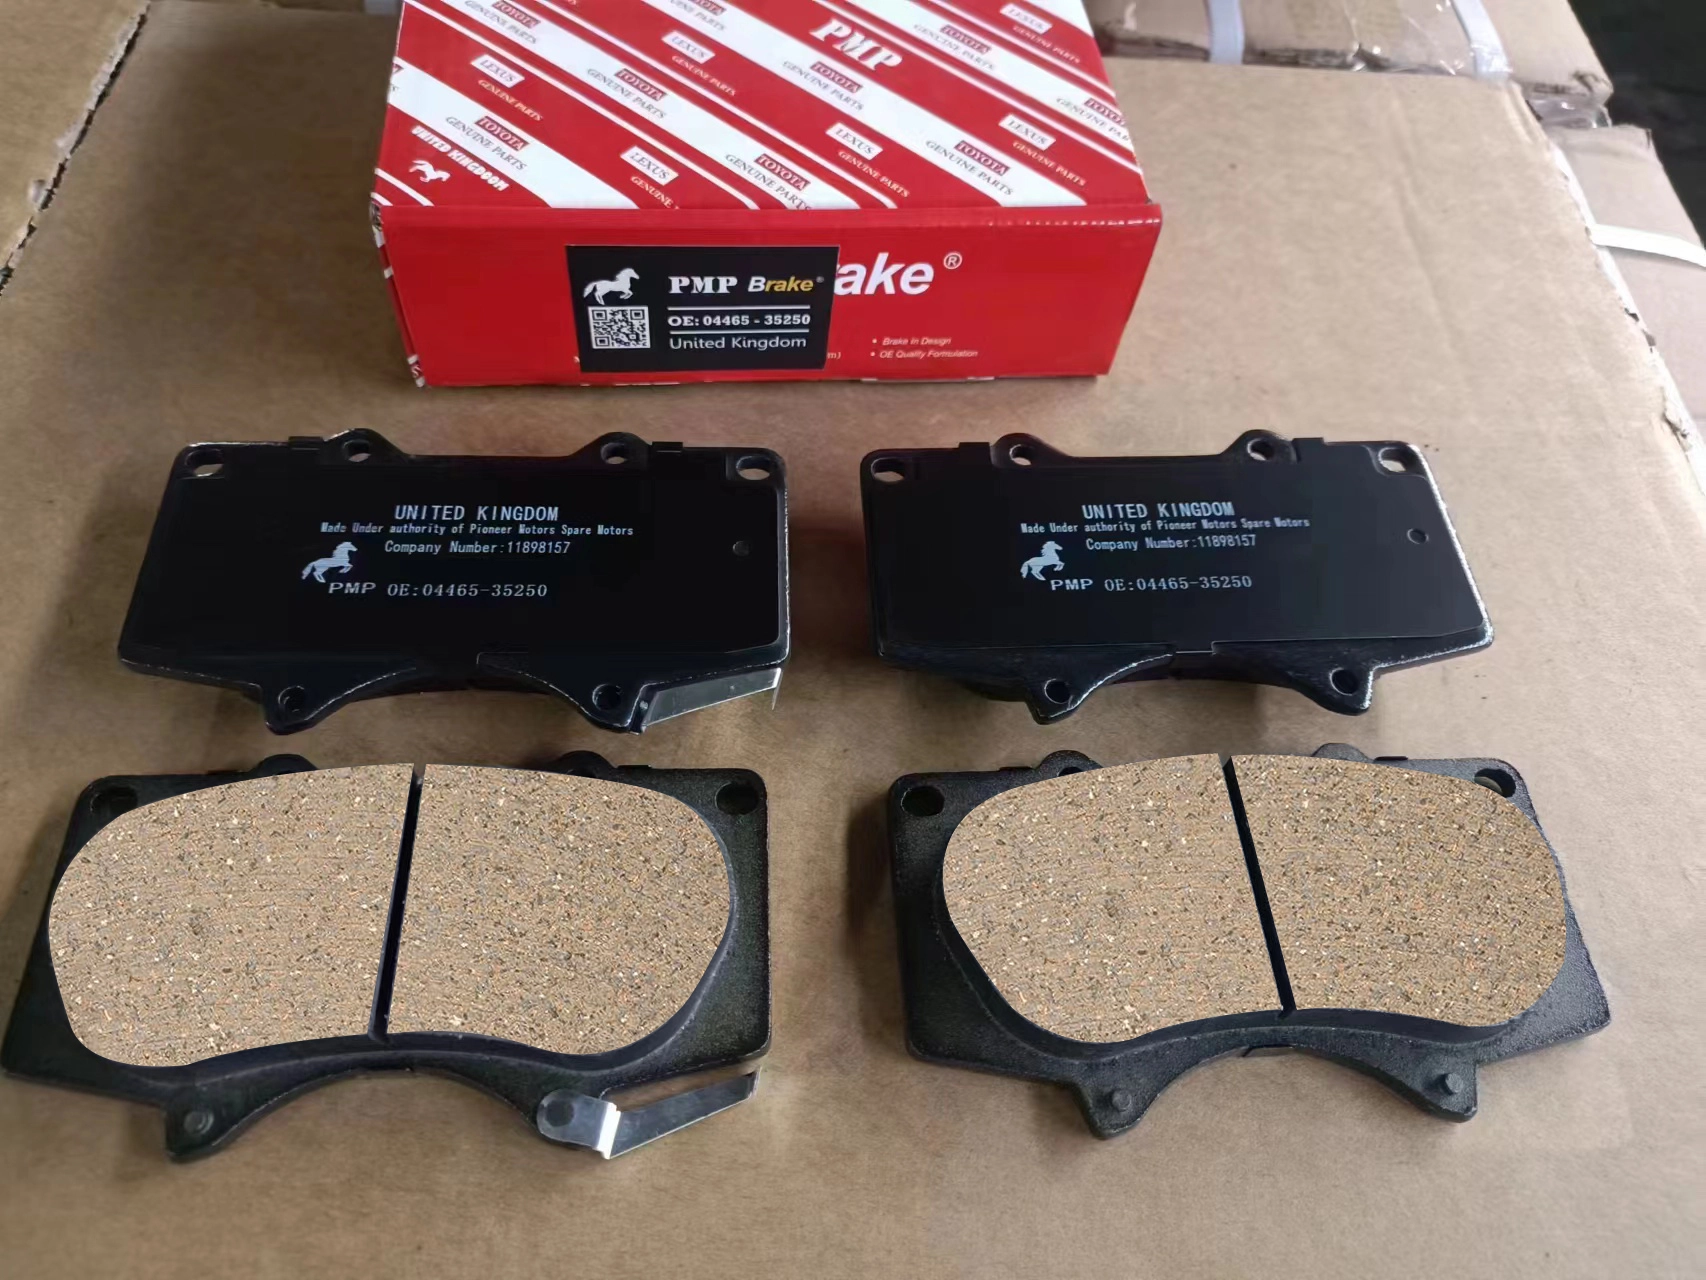 Brake pads designed for Toyota Corolla, vital for optimal braking performance.